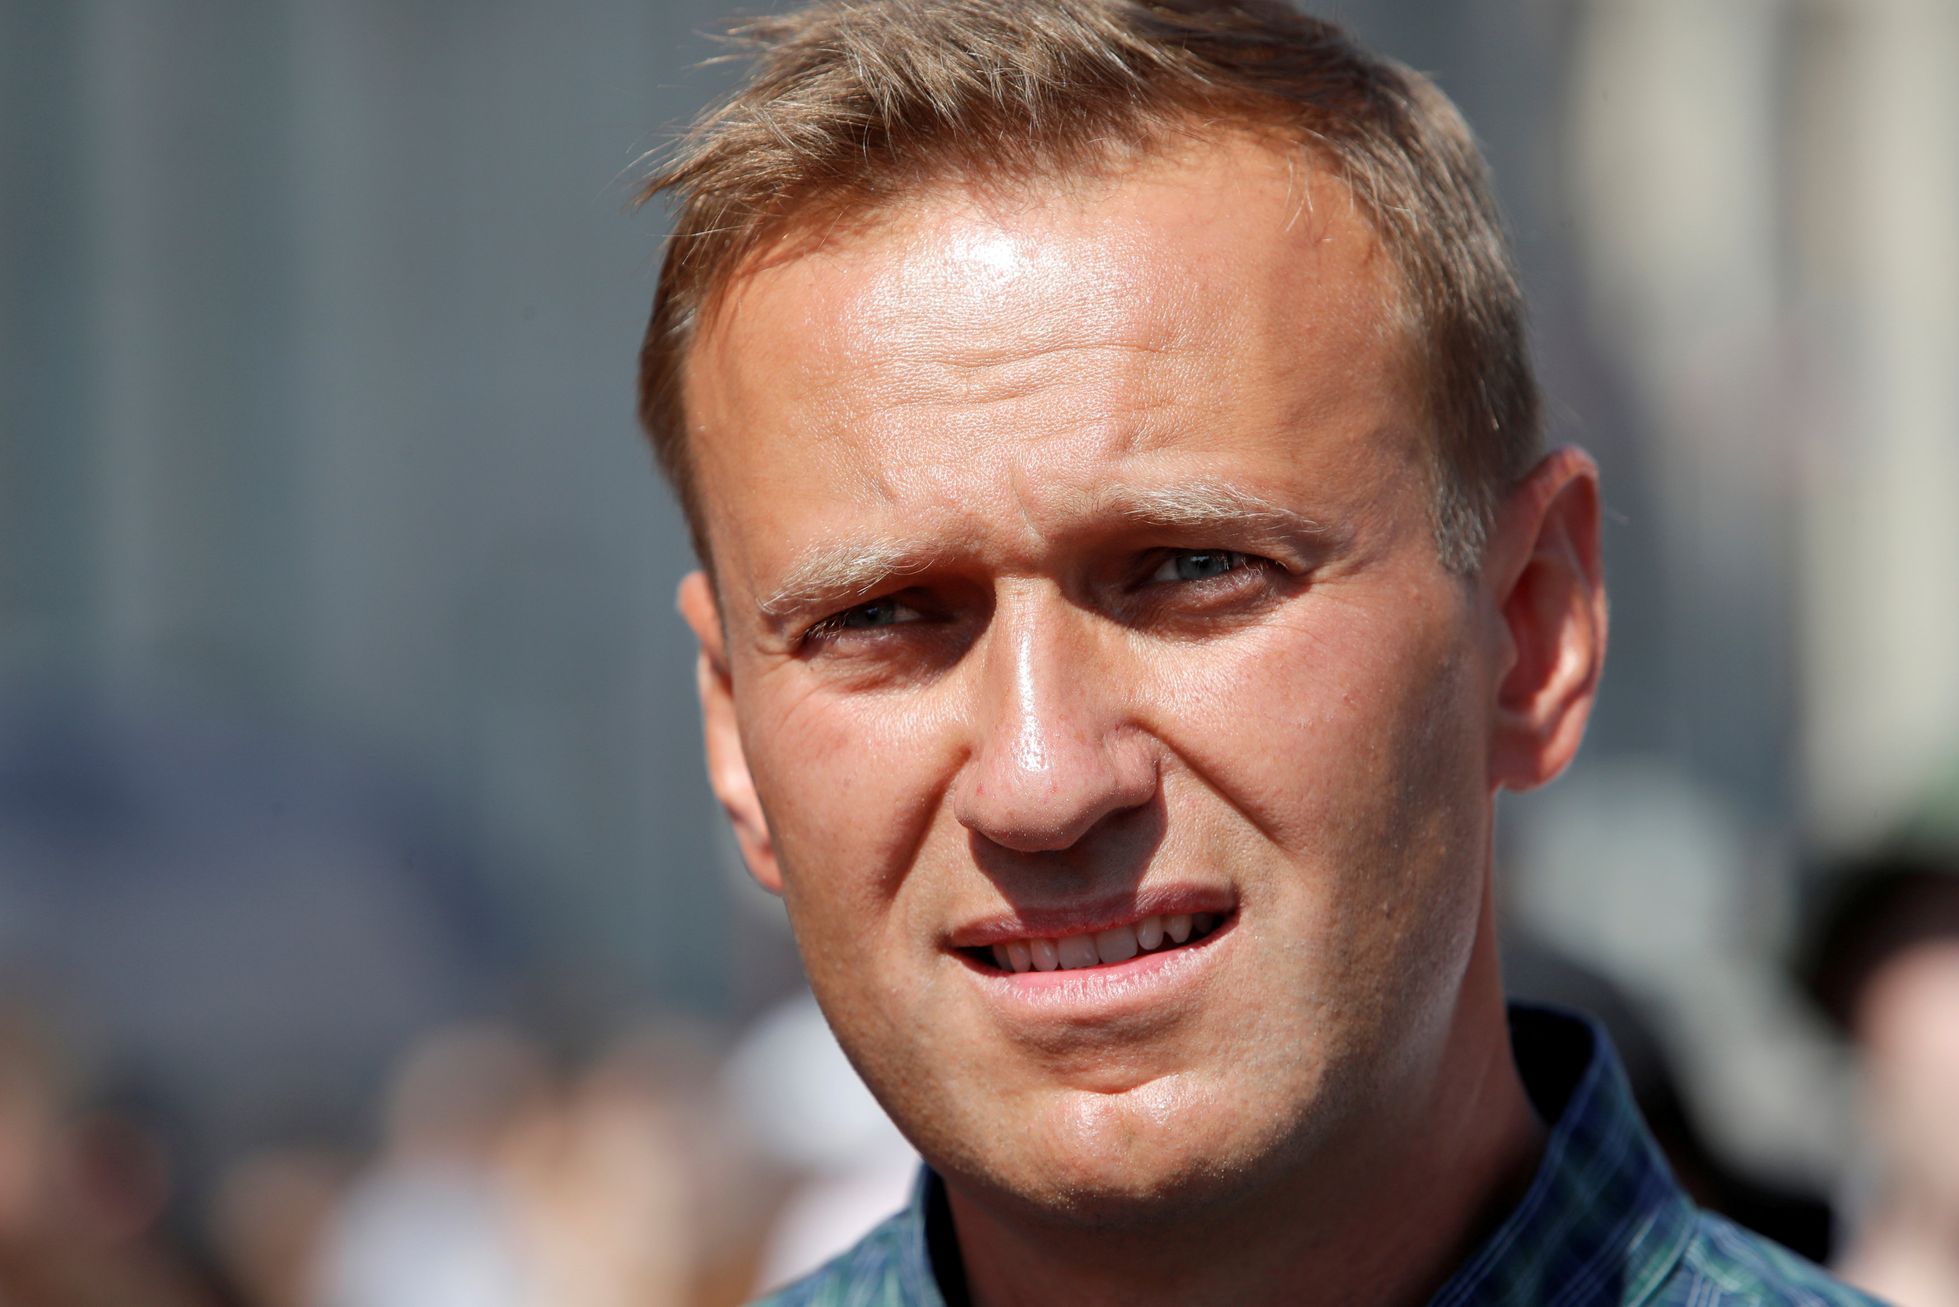 Gegner Nawalny wurde vergiftet, fanden die Deutschen heraus.  Ärzte halten ihn im künstlichen Schlaf